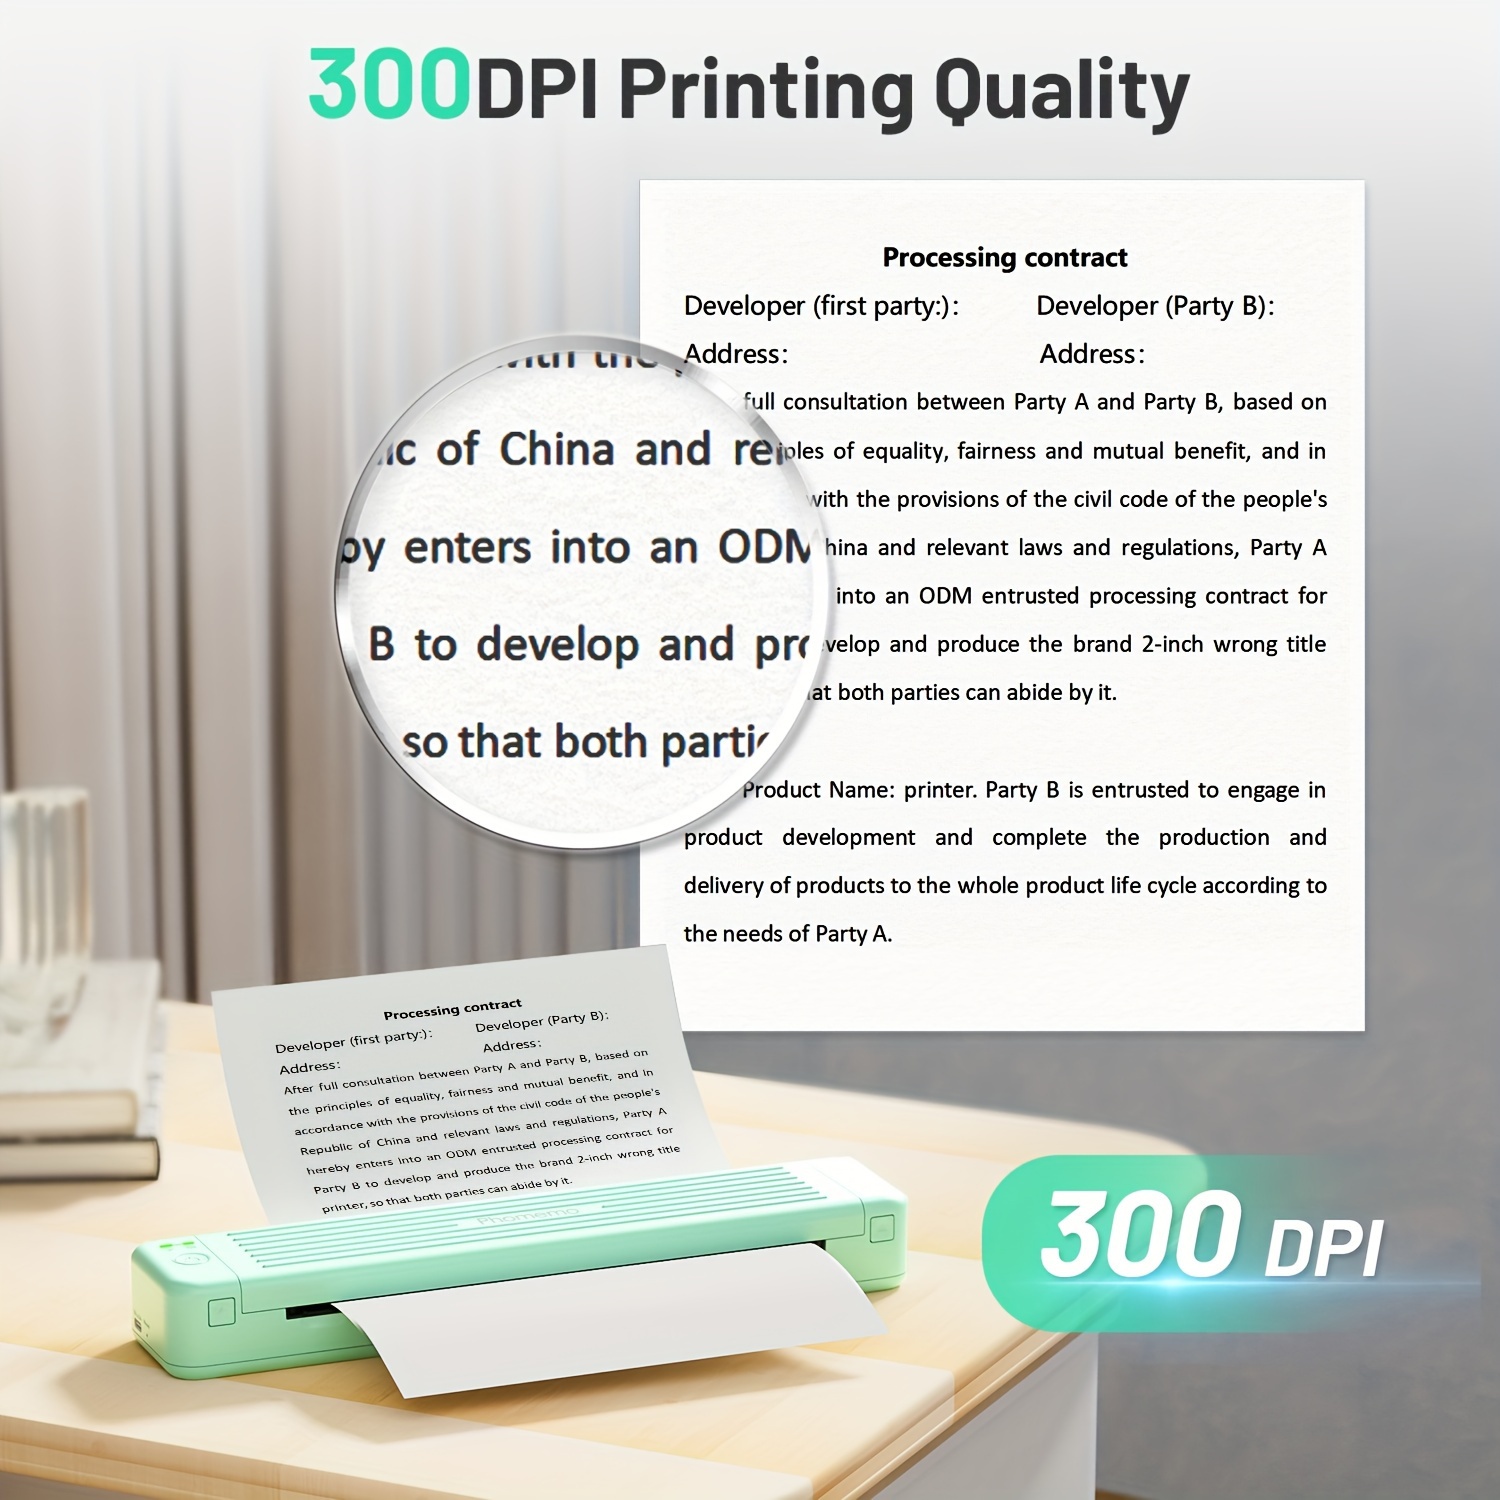 Impresora Portátil Inalámbrica Phomemo P831 Actualizada Viajes, Compatible  Papel Térmico 8.5 X 11 (carta Estadounidense) A4, Ahorra Dinero En Temu